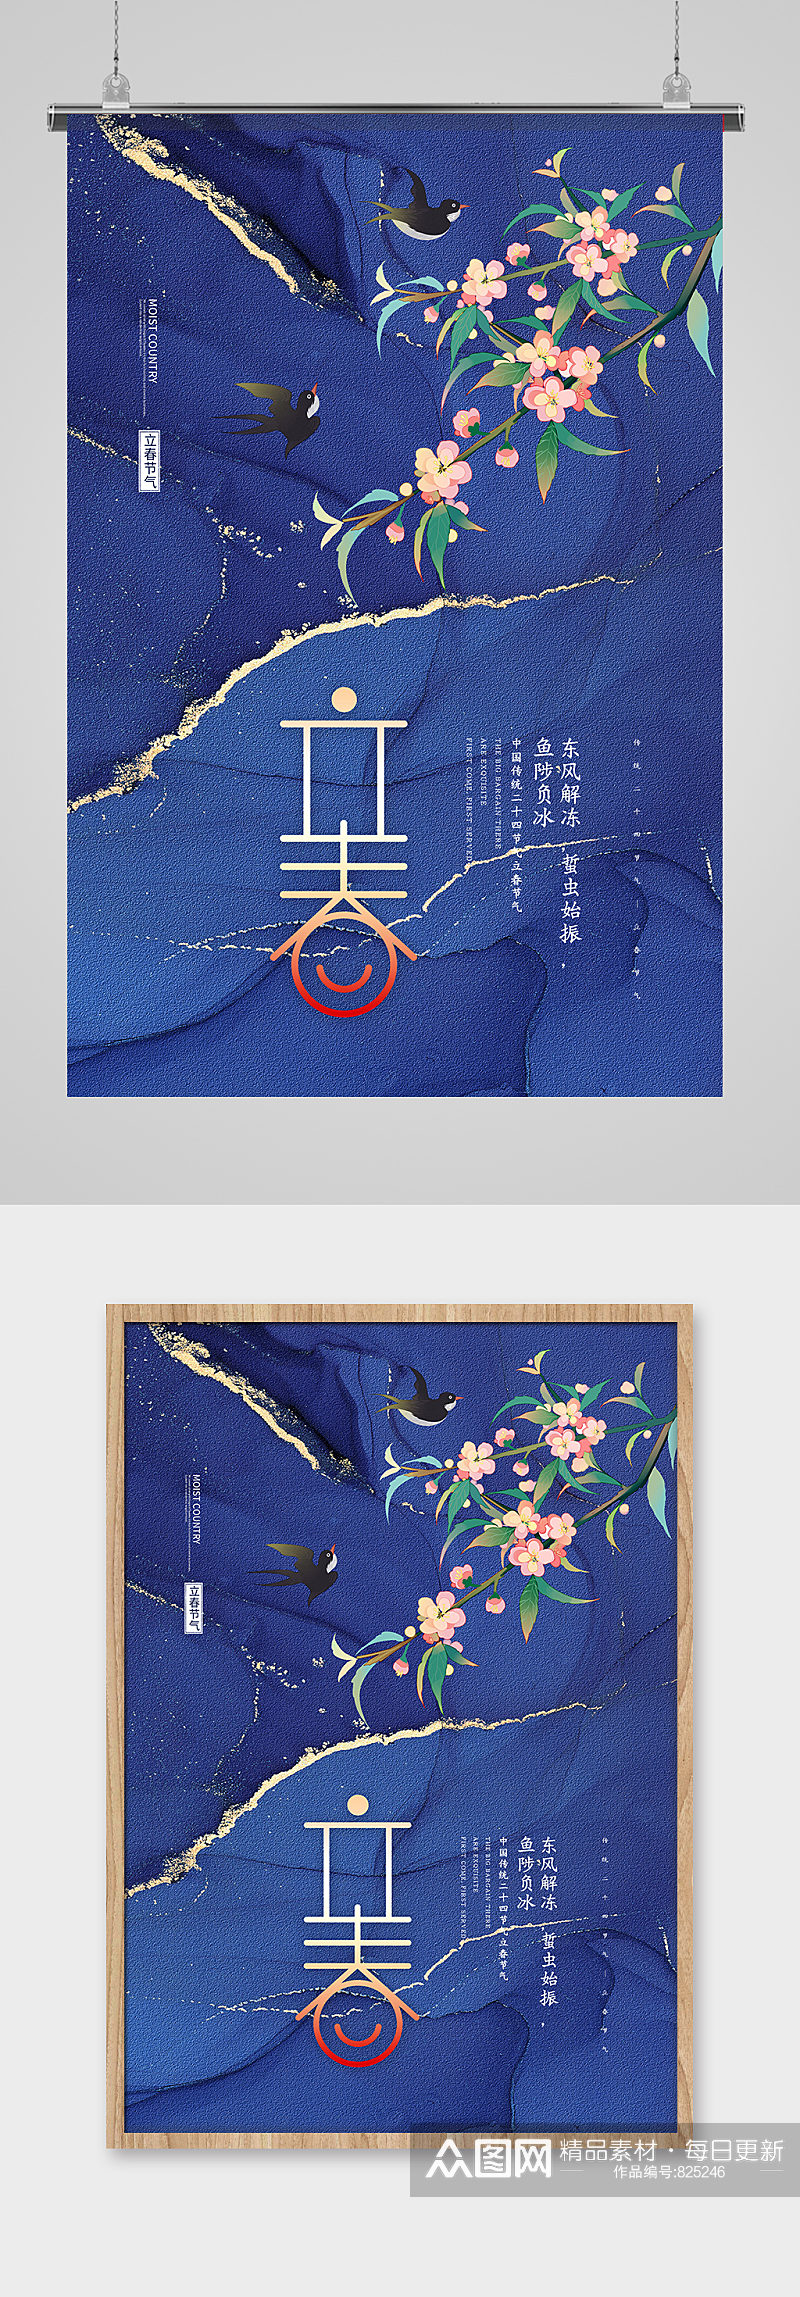 创意中国传统二十四节气之立春海报素材